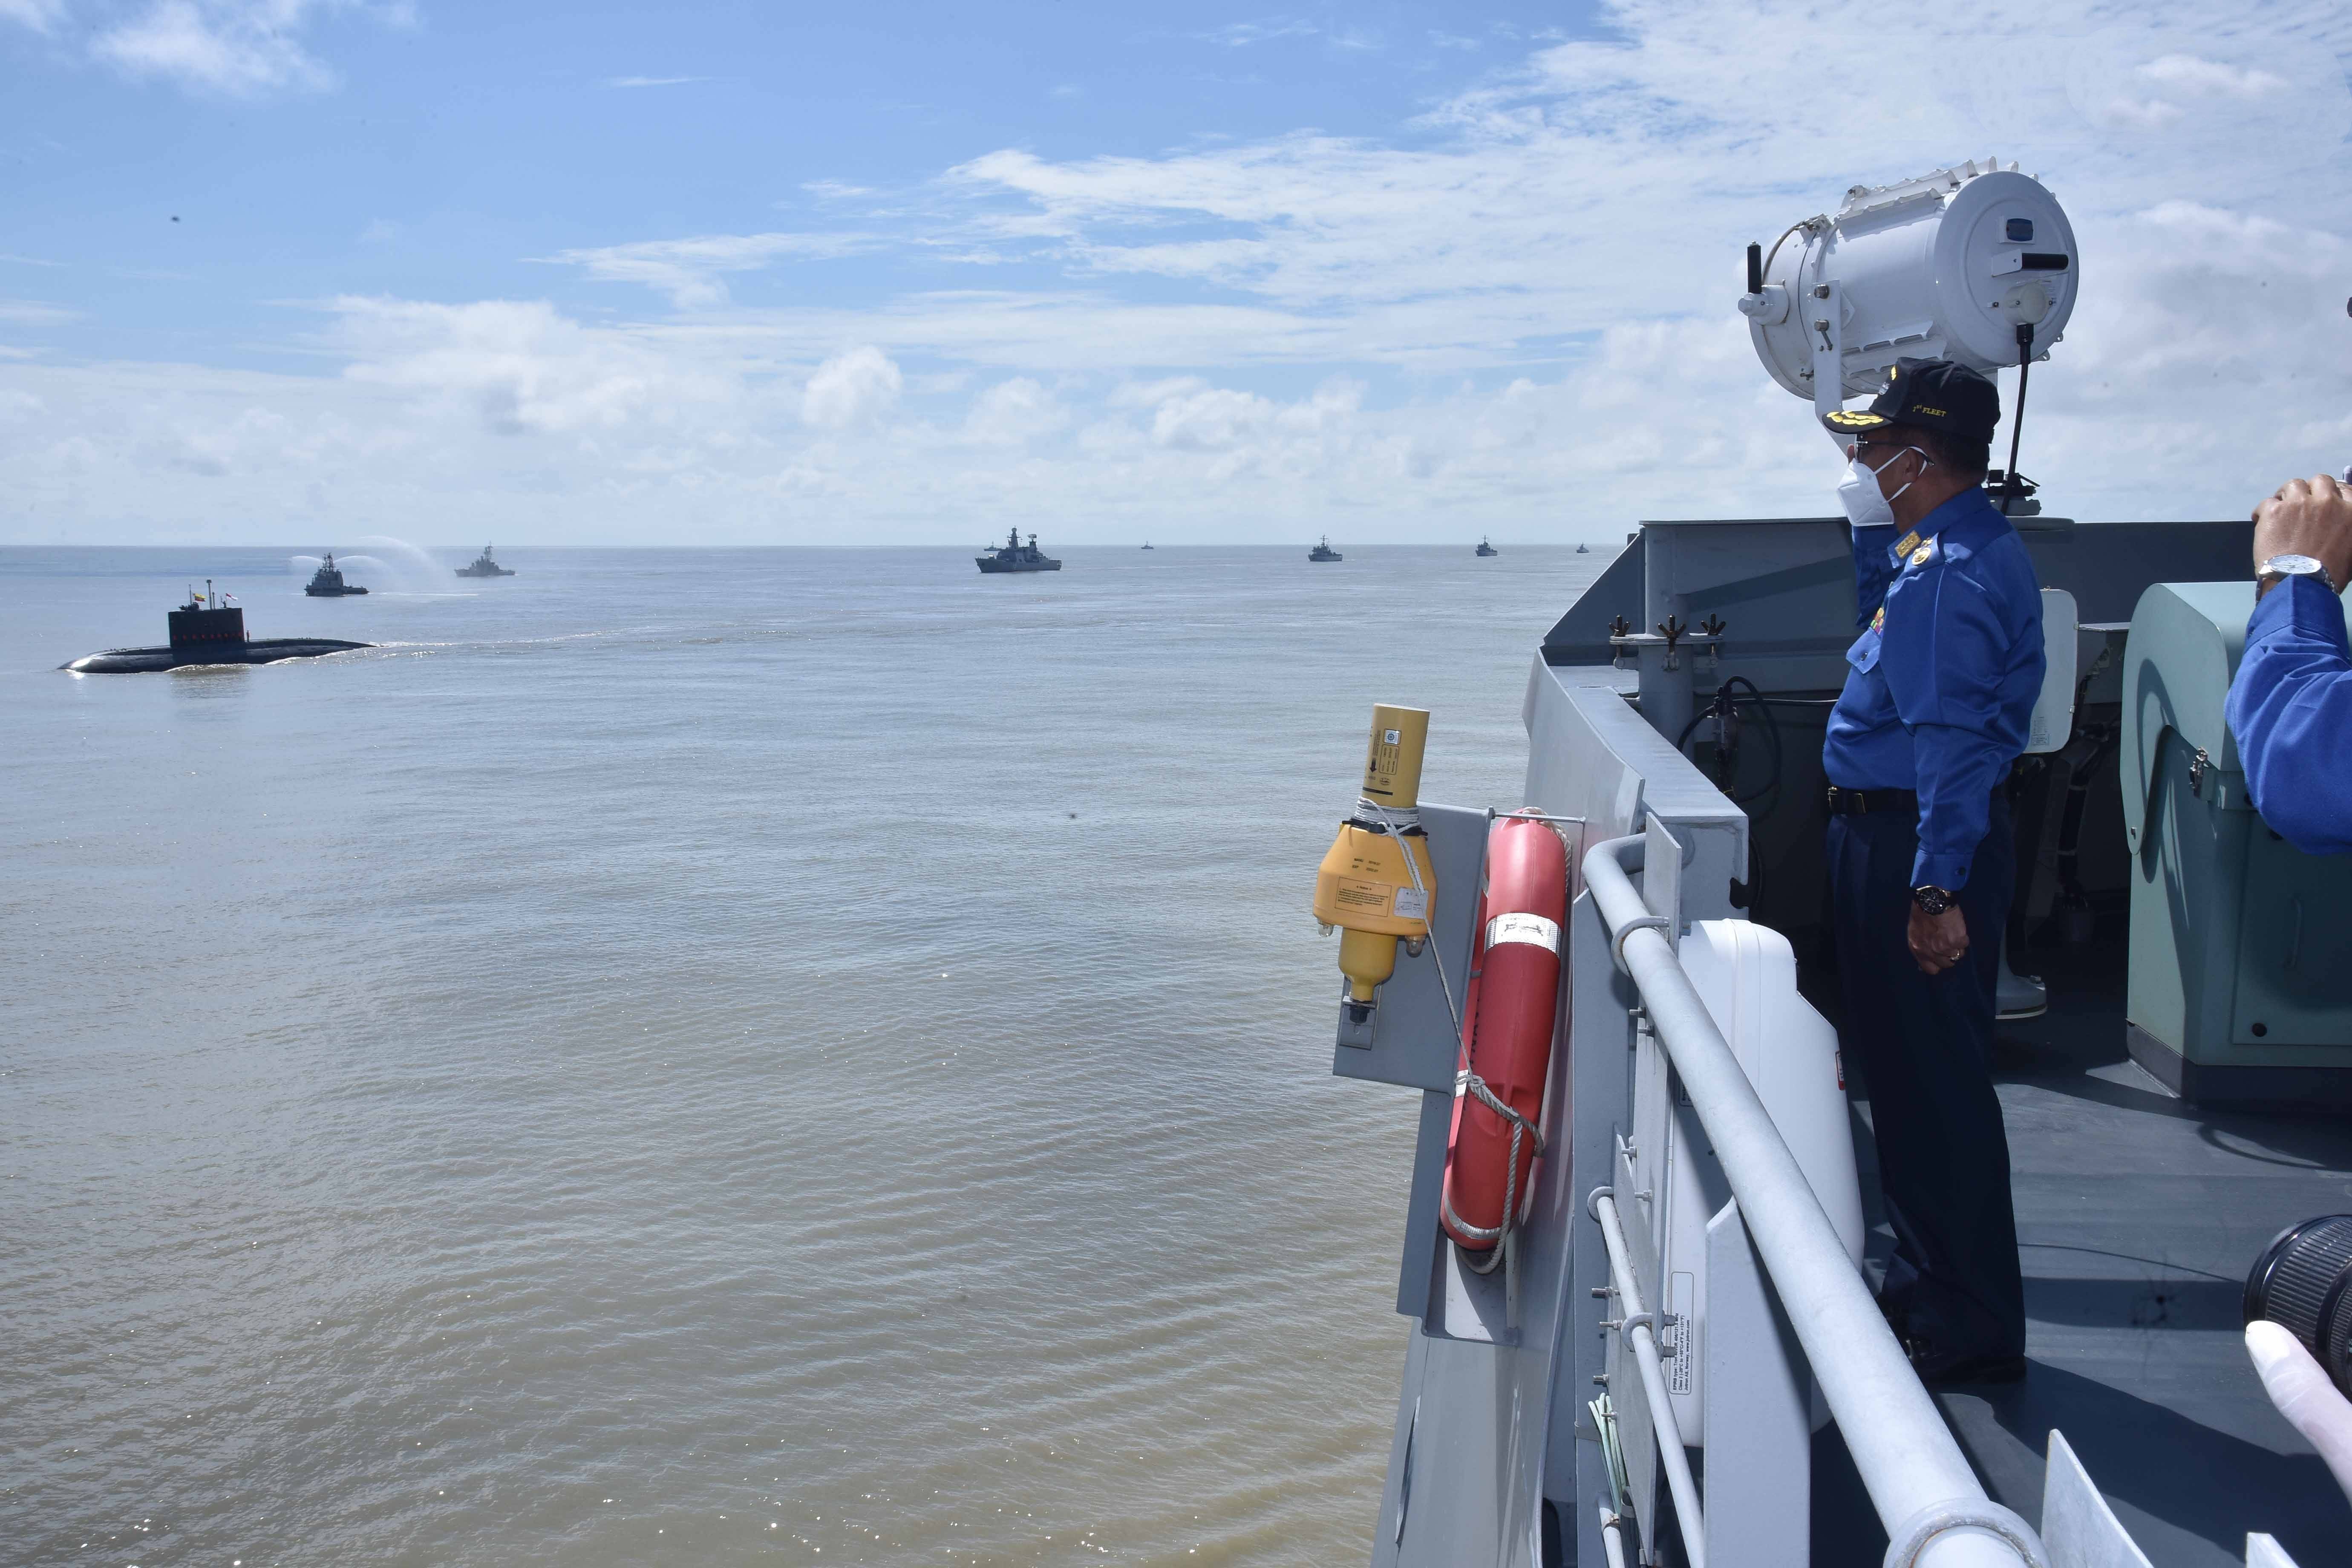 缅甸举行2020年度海军演习,从印度购买的二手基洛级潜艇成主角